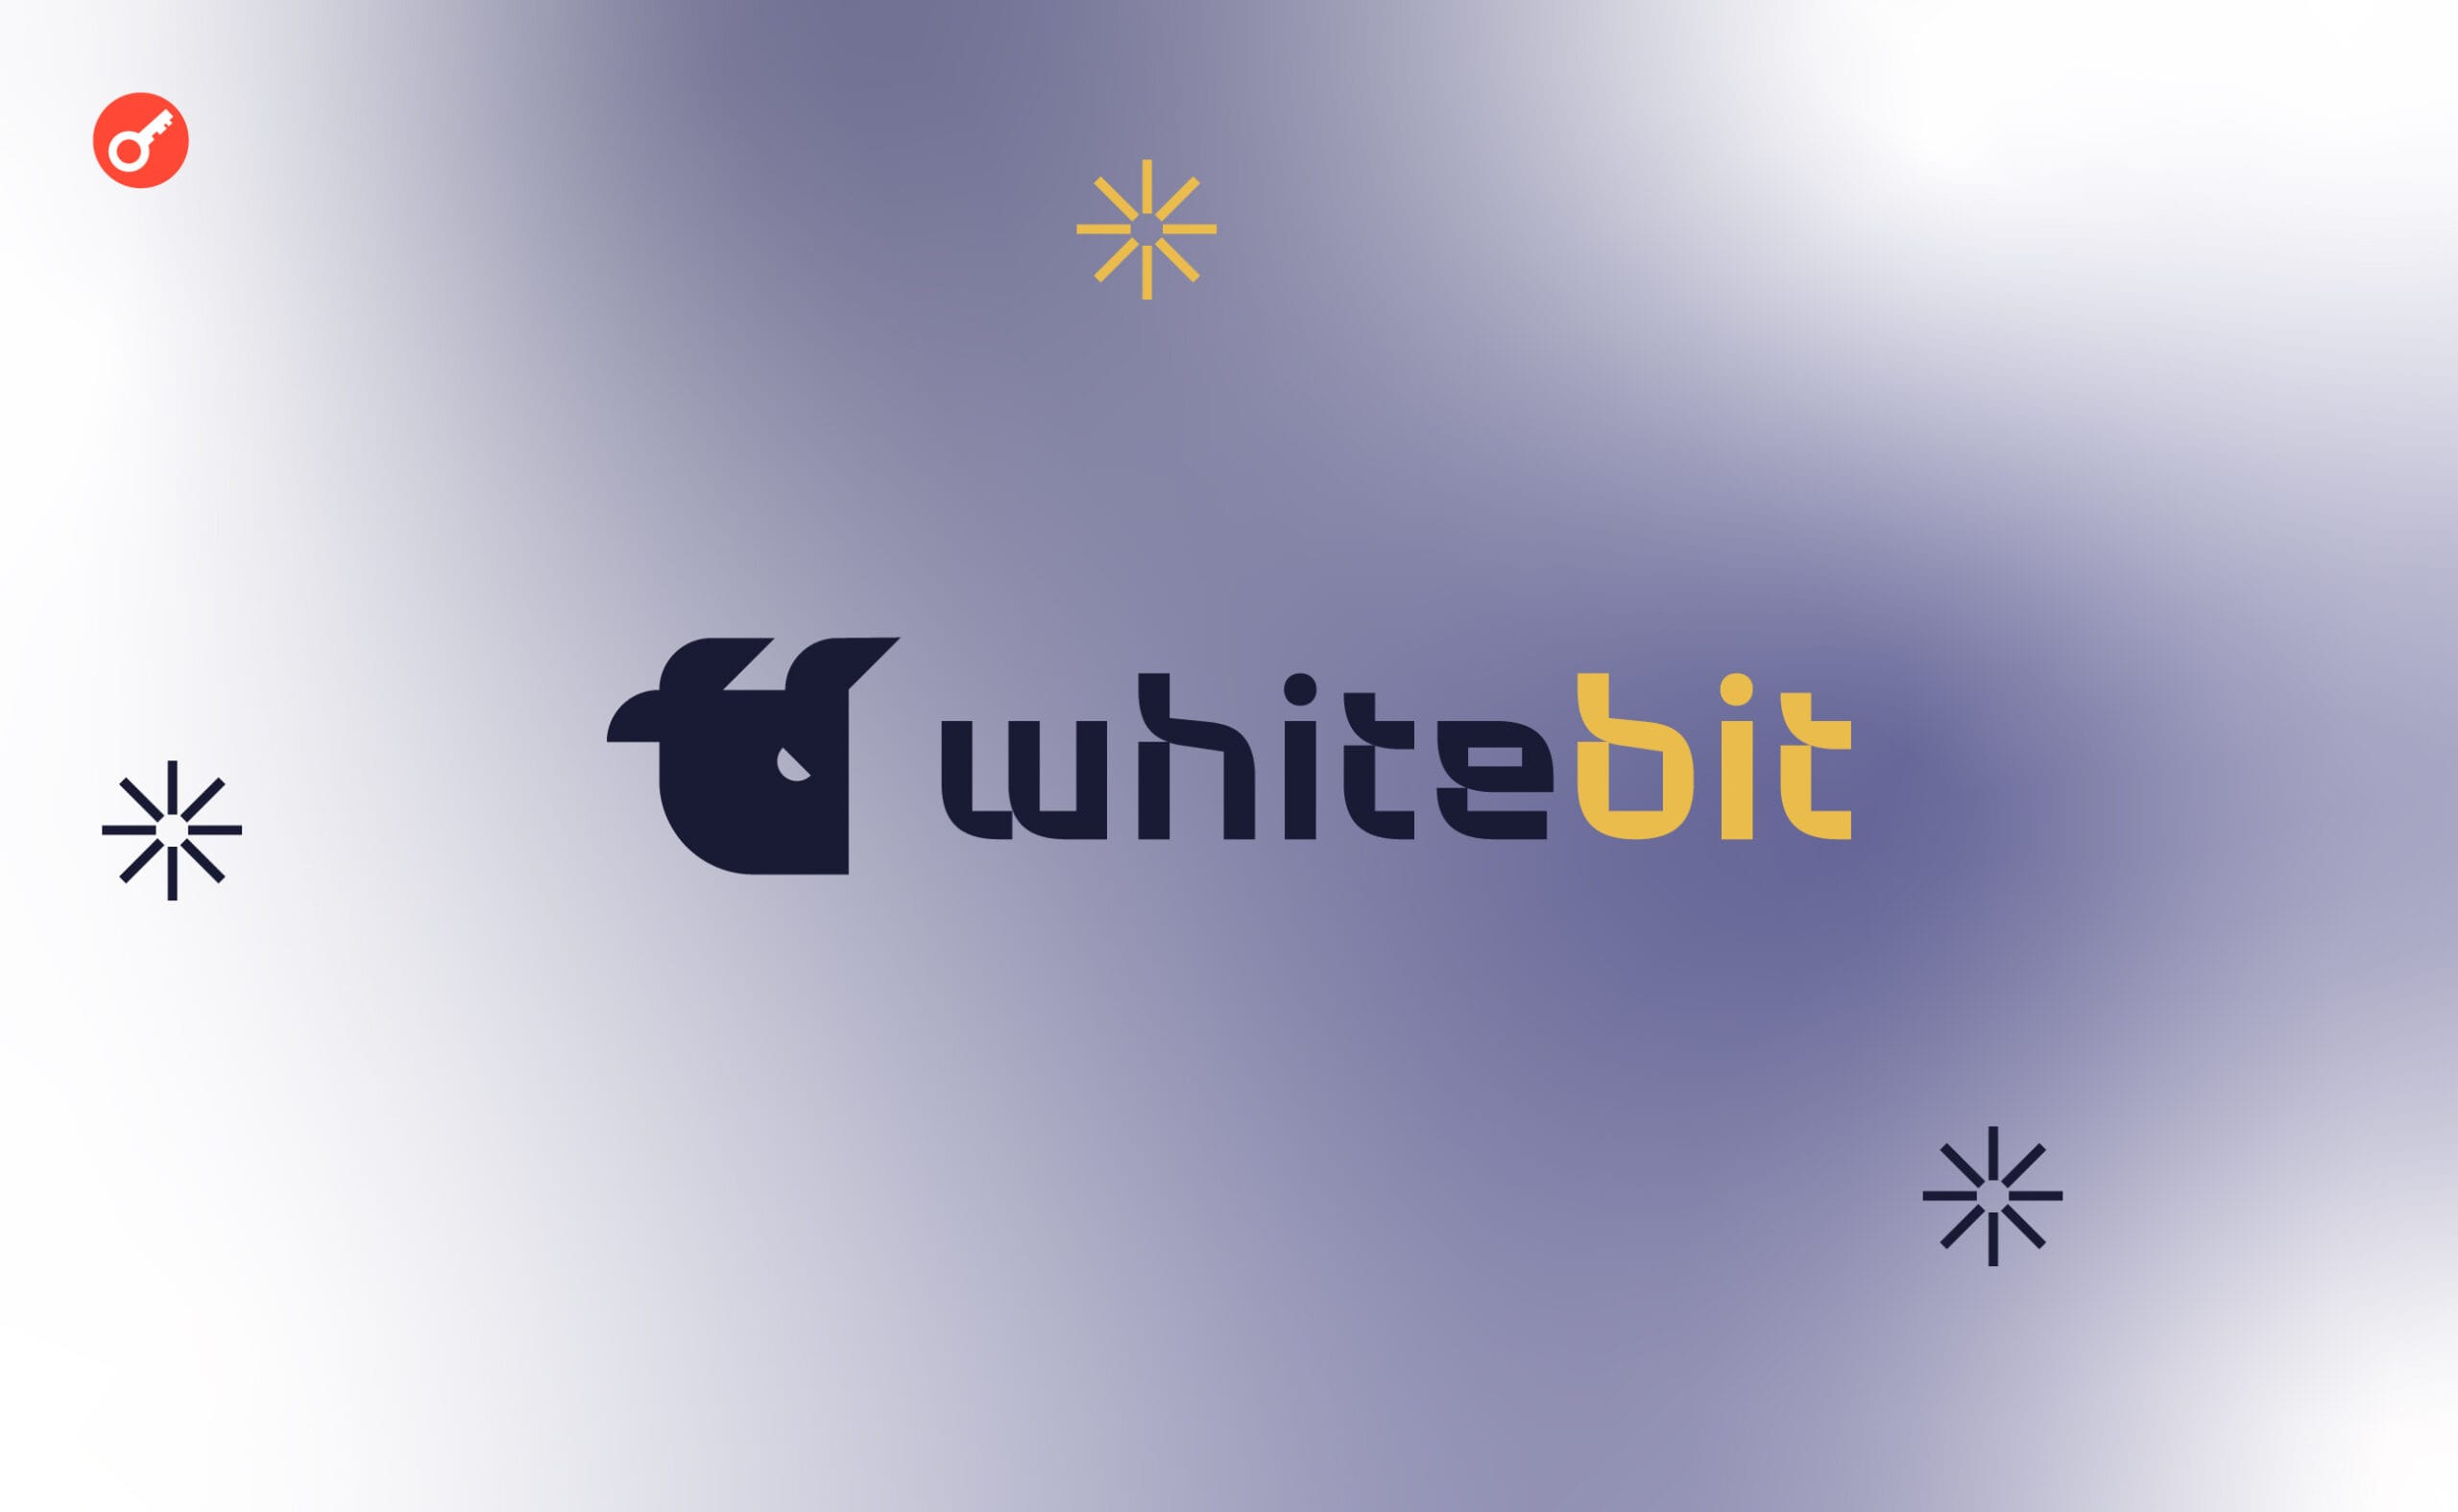 МИД при поддержке WhiteBIT запустили чат-бот для помощи гражданам в консульских вопросах. Заглавный коллаж новости.